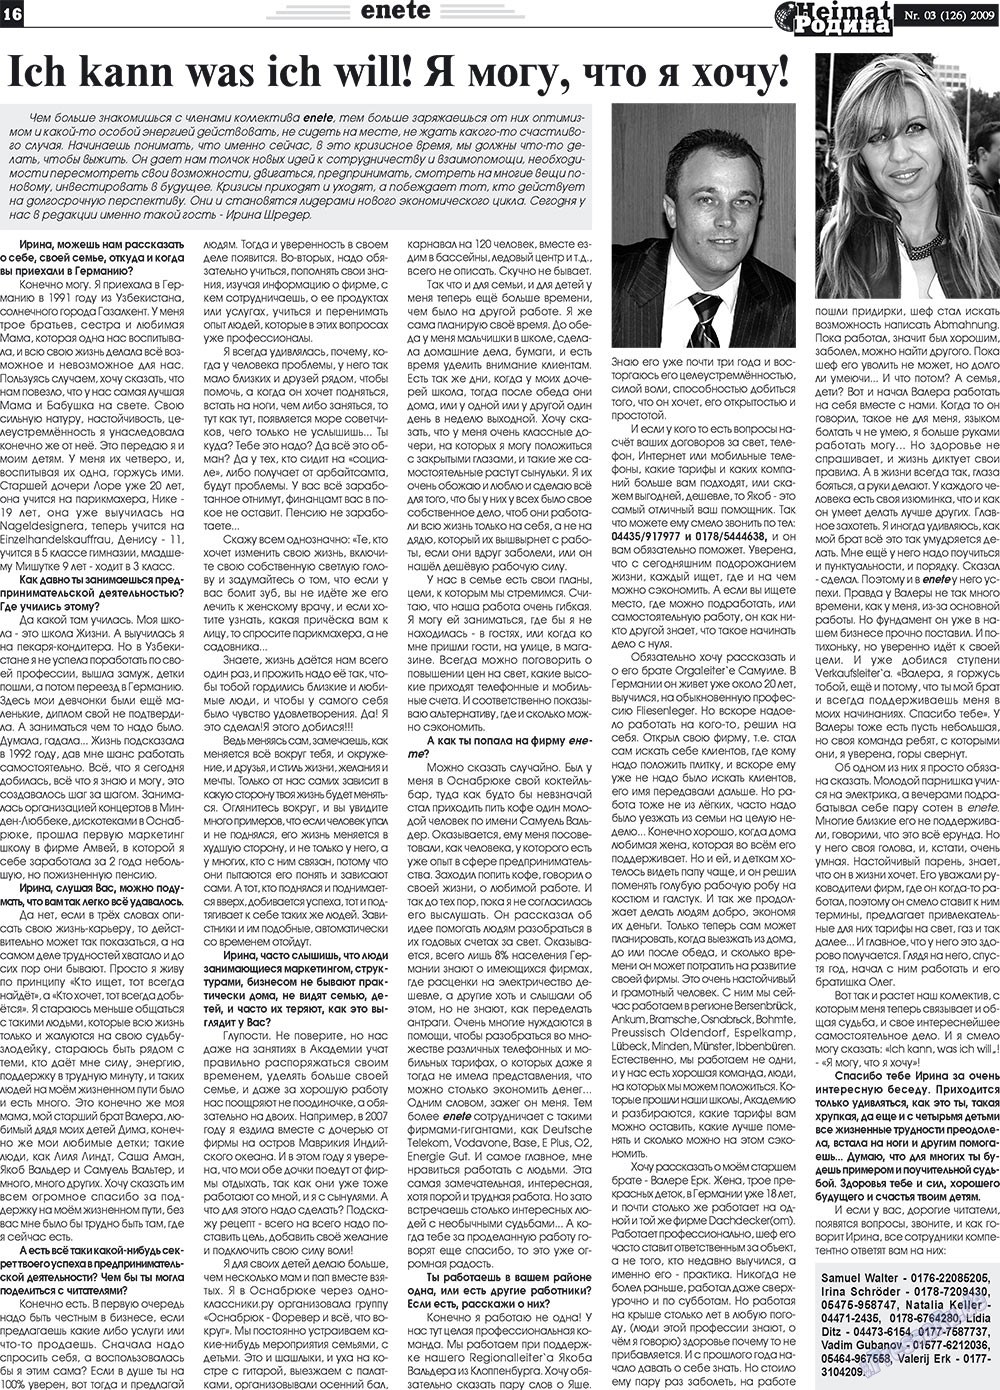 Heimat-Родина (Zeitung). 2009 Jahr, Ausgabe 3, Seite 16